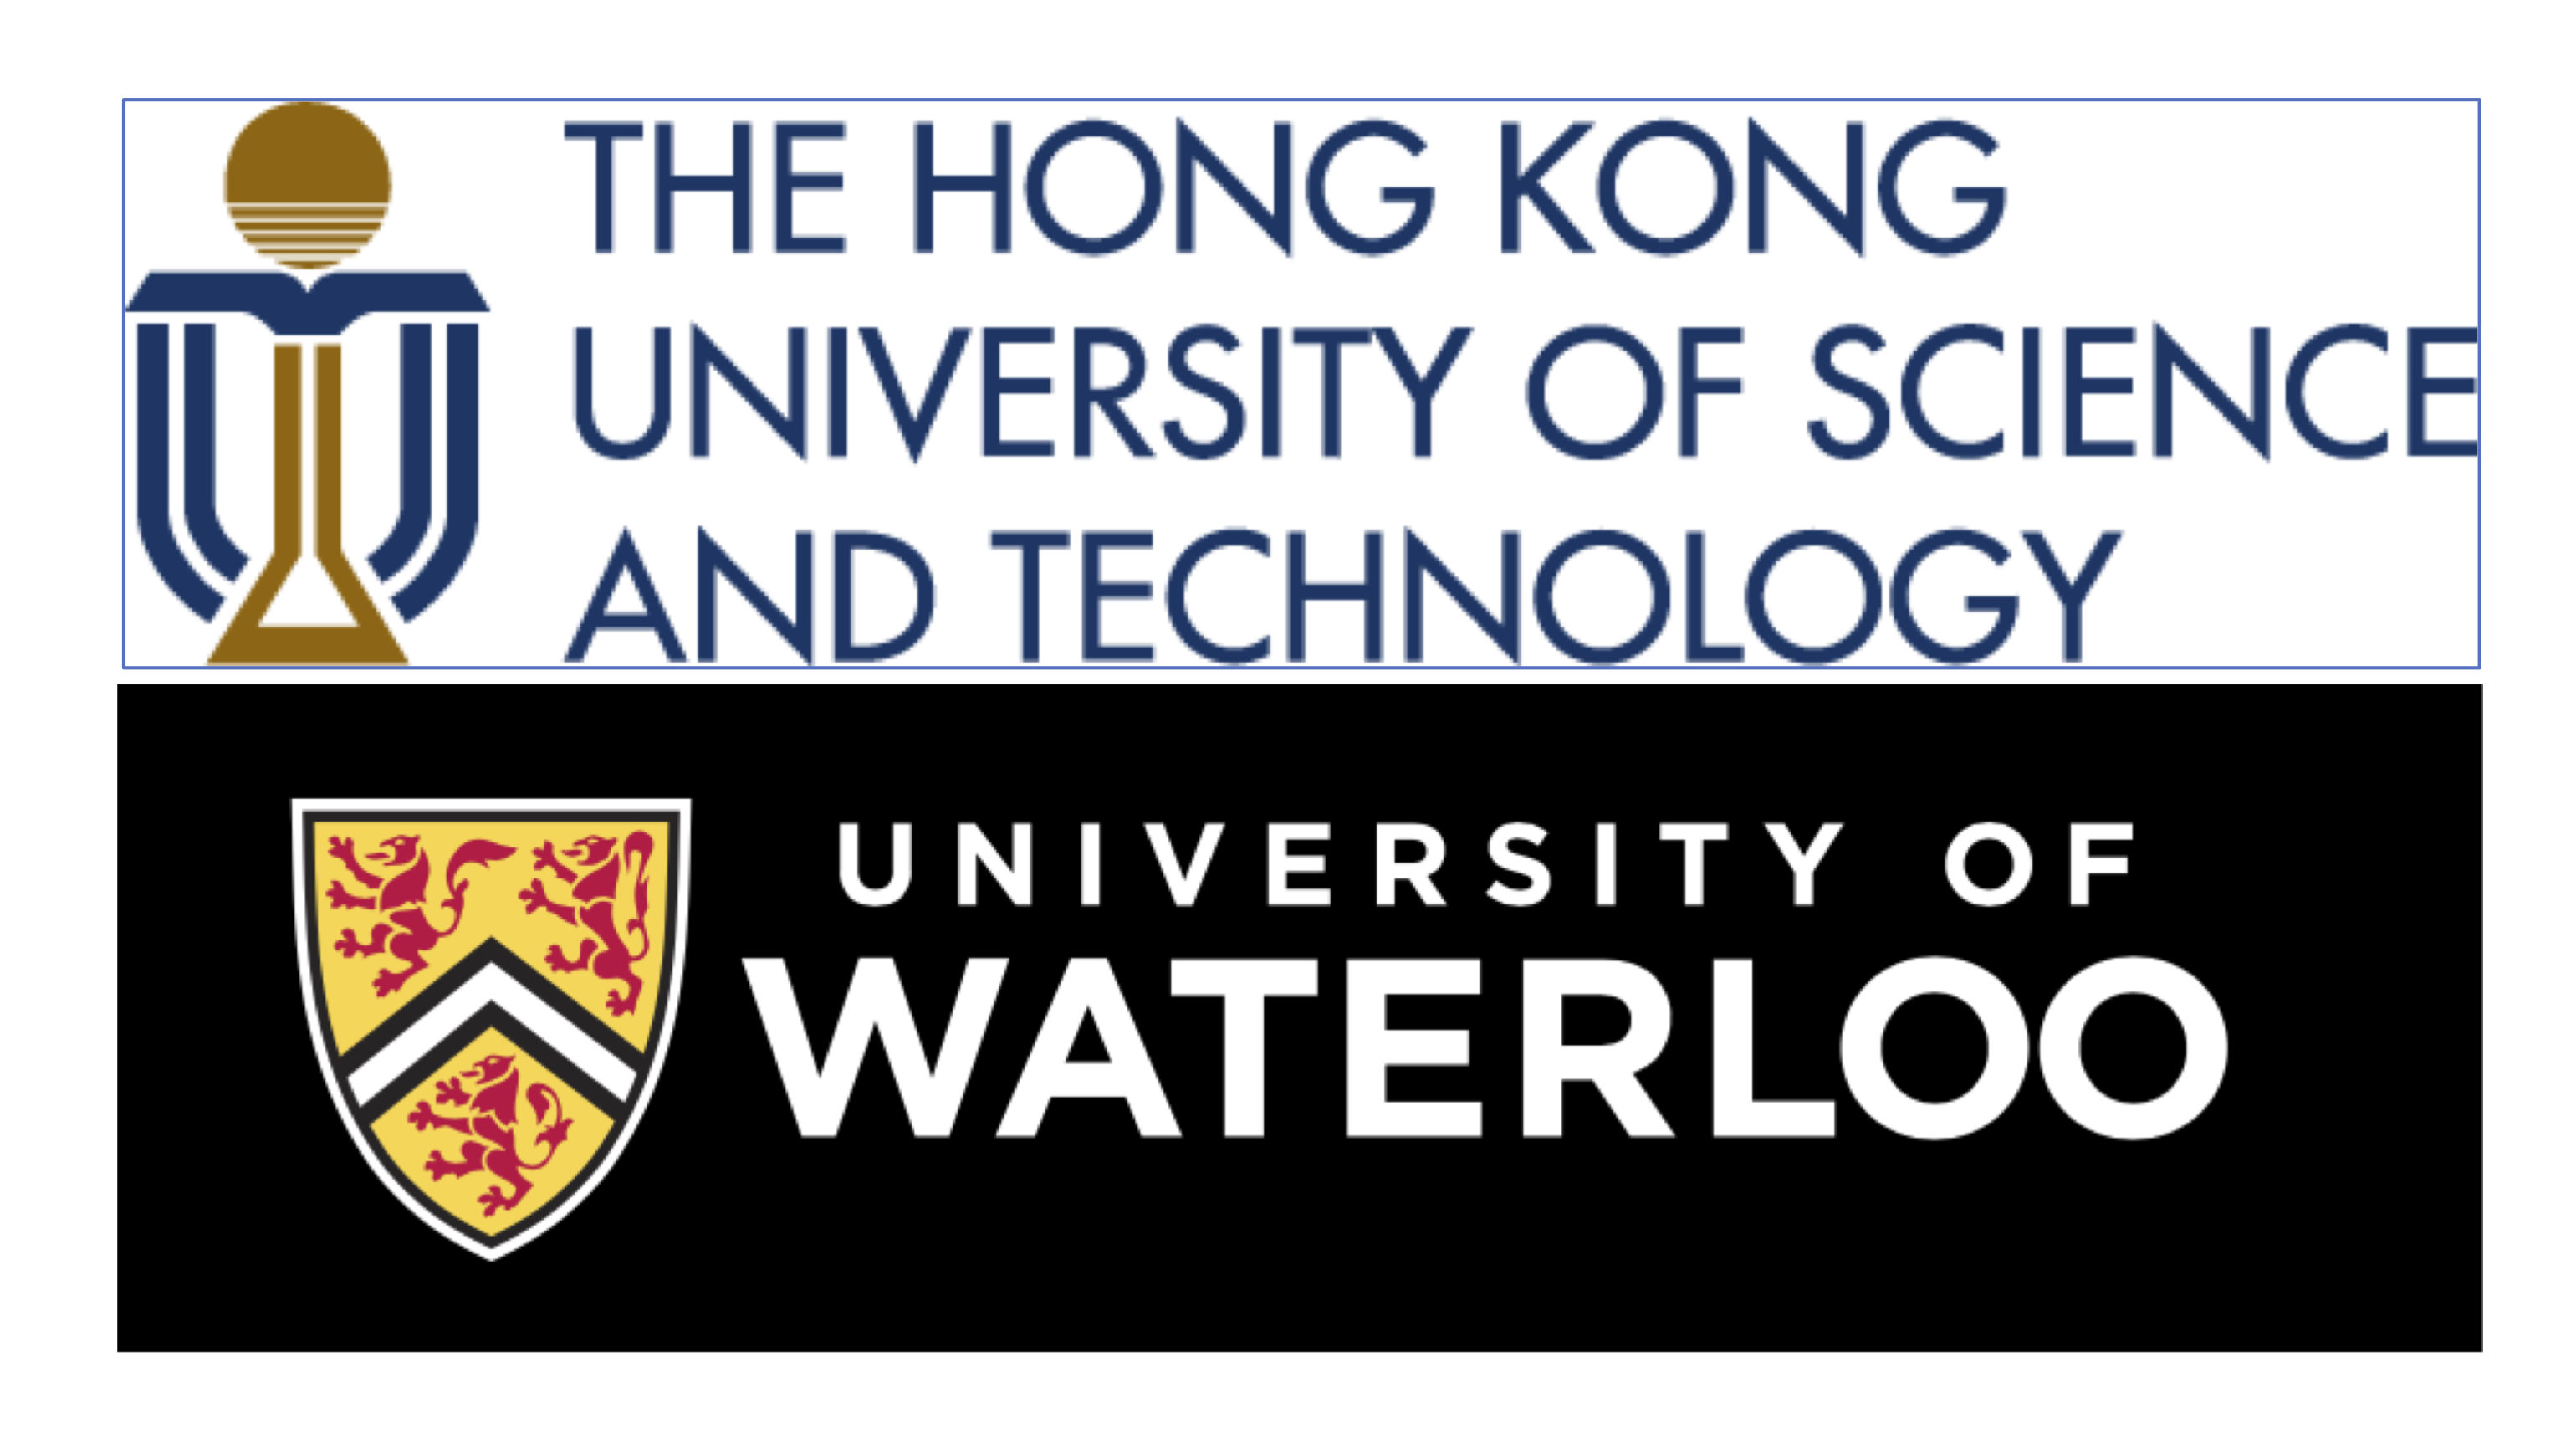 HKUST-Waterloo
	        joint PhD